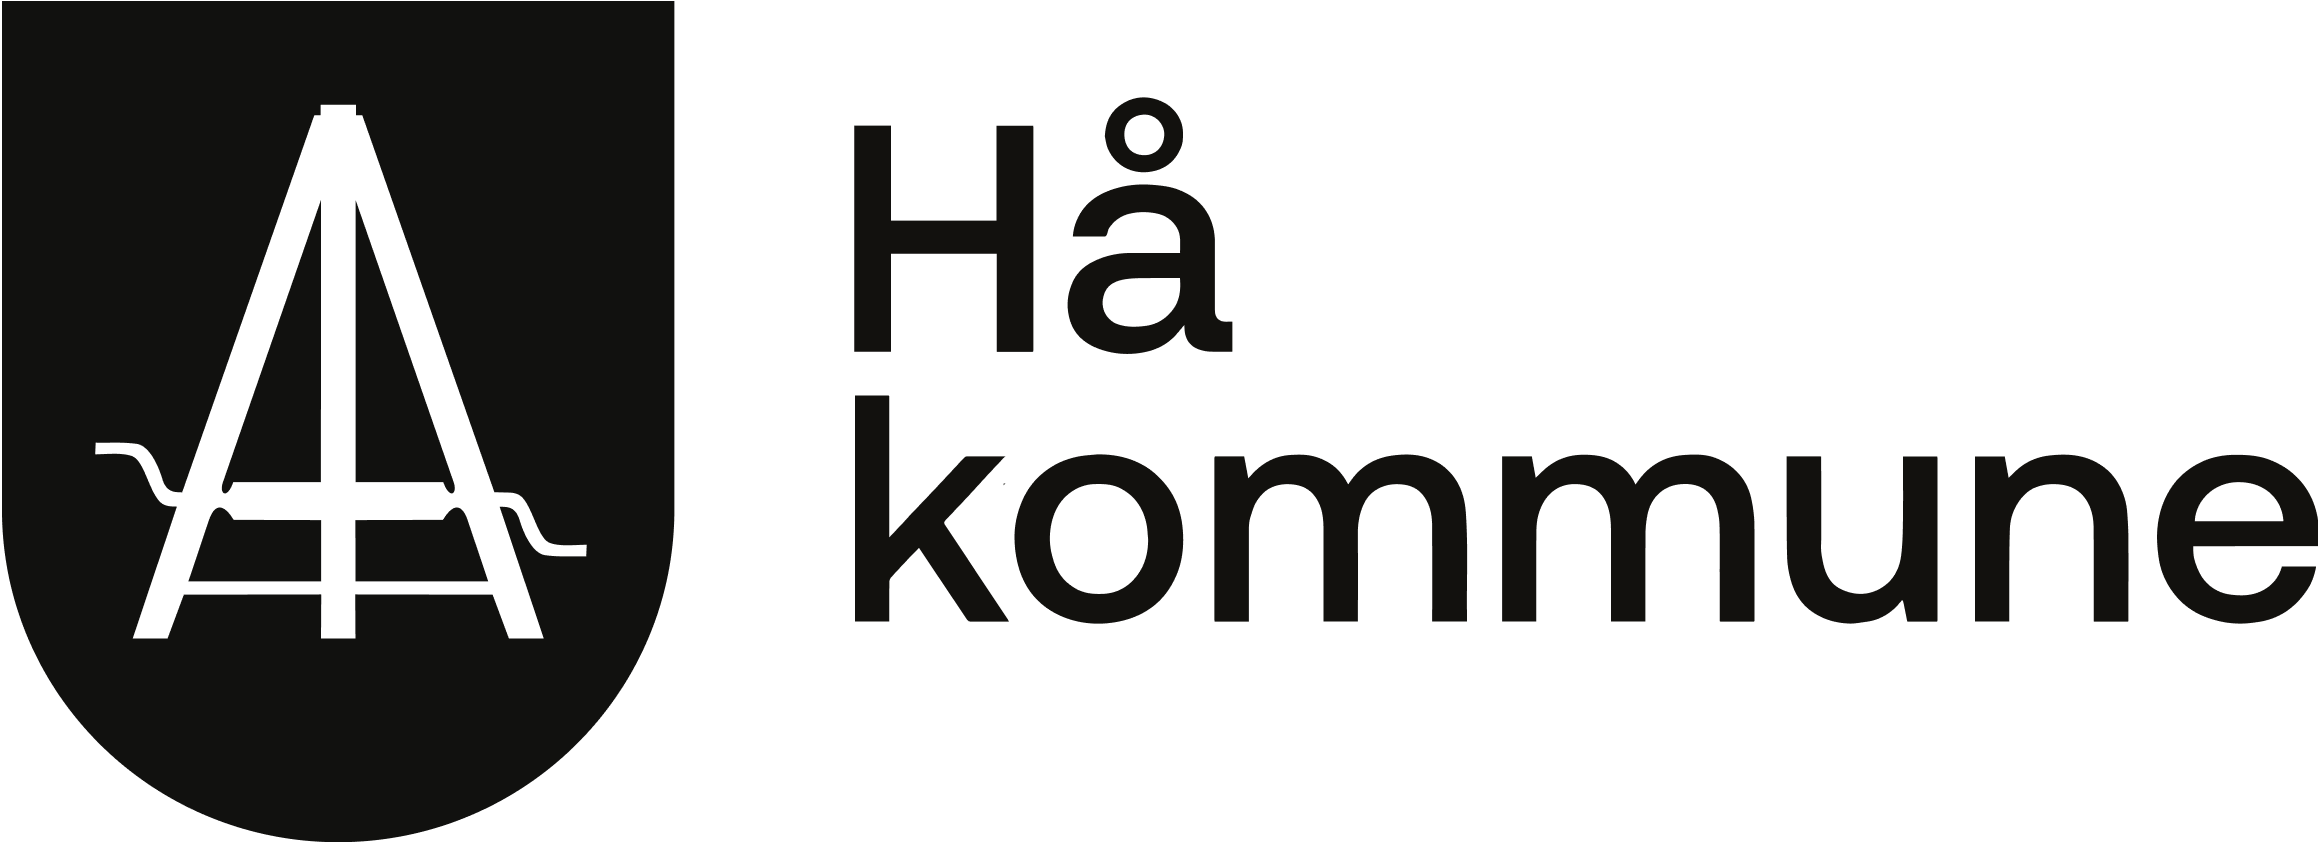 Hå kommune